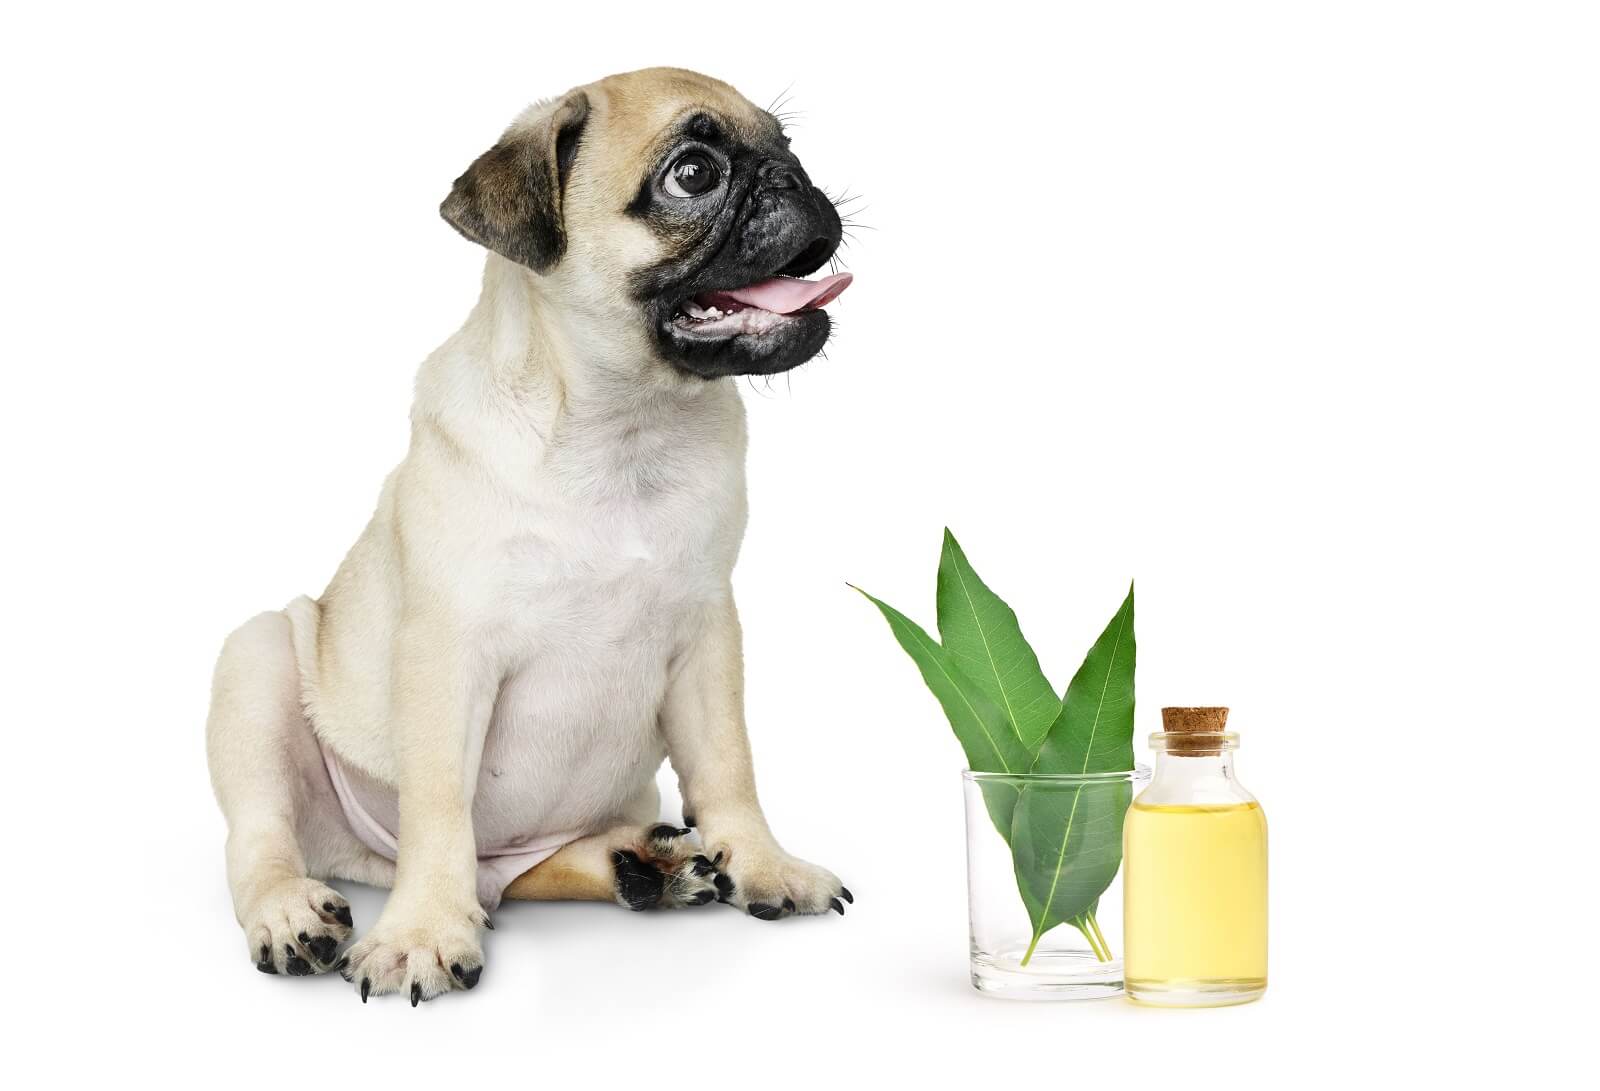 Do essential oils hurt dogs?